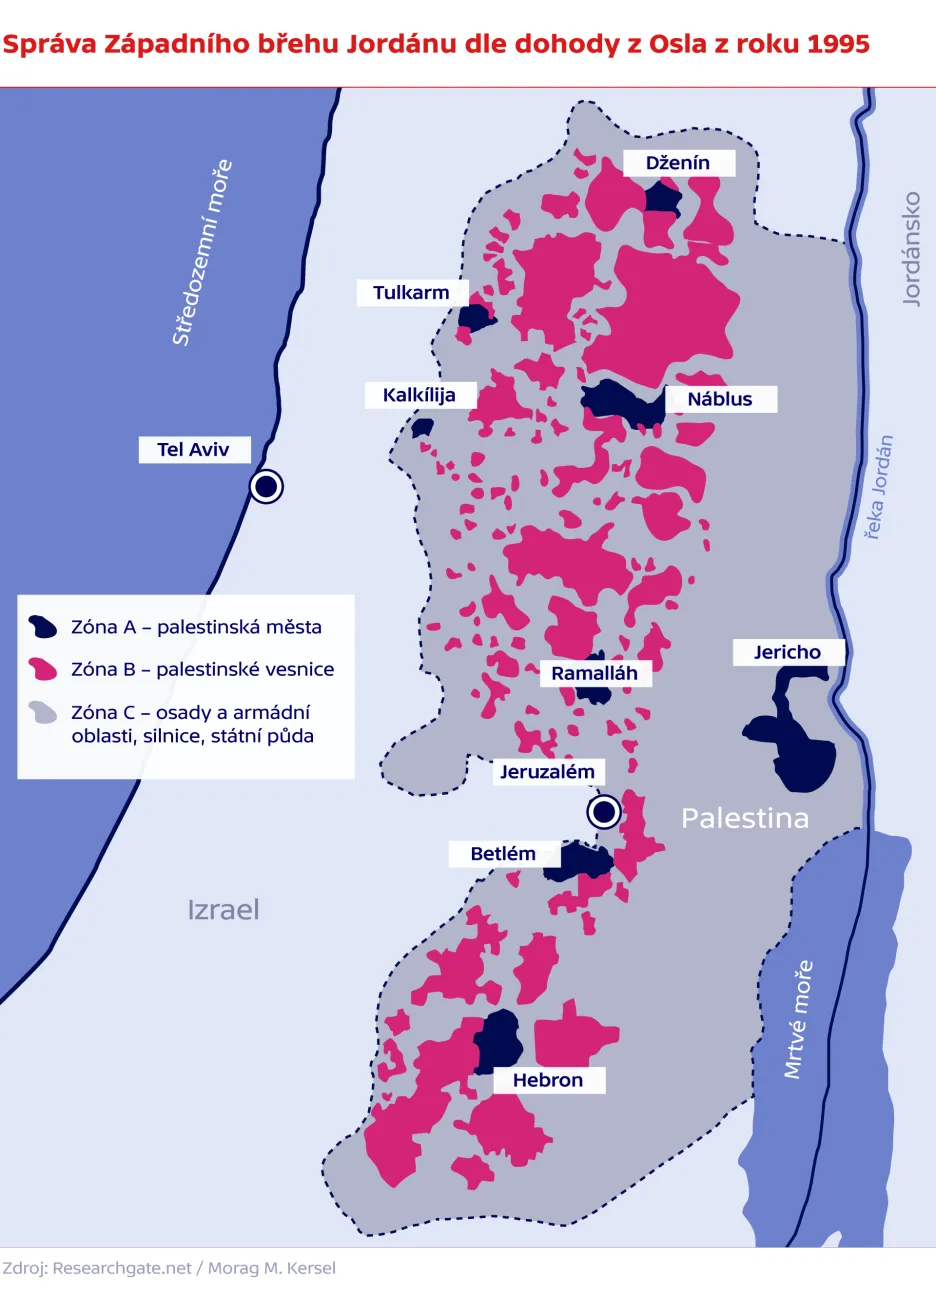 Správa Západního břehu Jordánu dle dohody z Osla z roku 1995